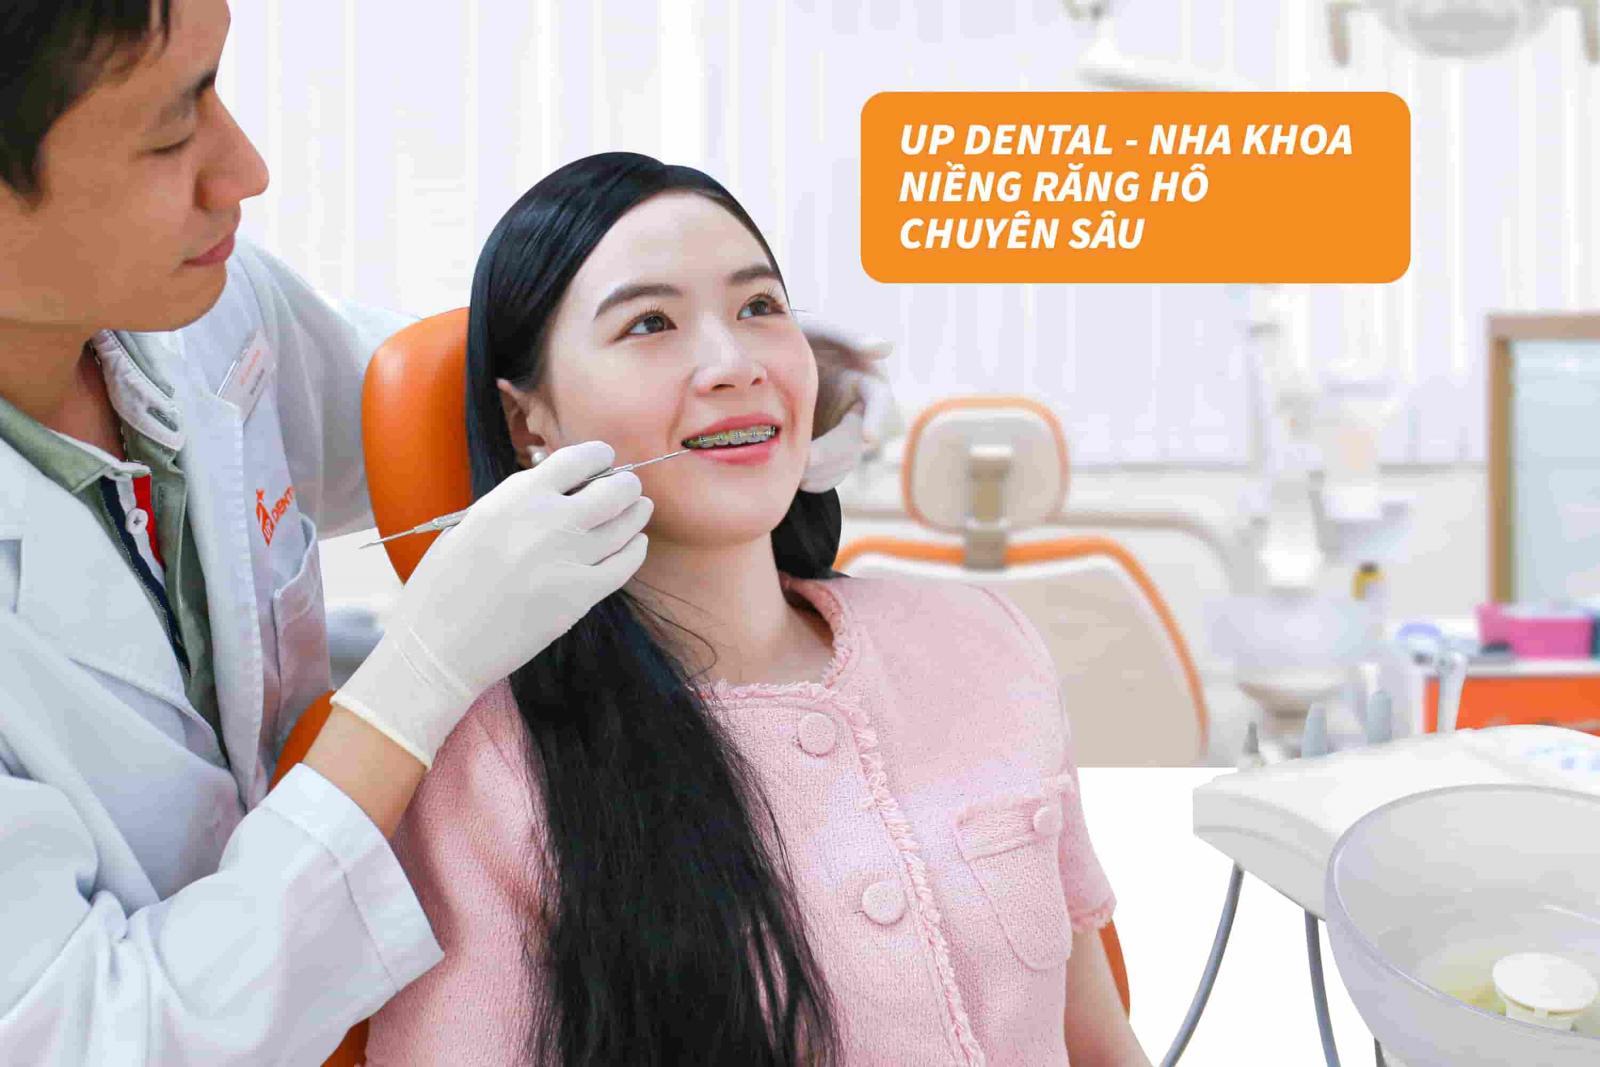 Up Dental - Nha khoa chuyên sâu niềng răng hô